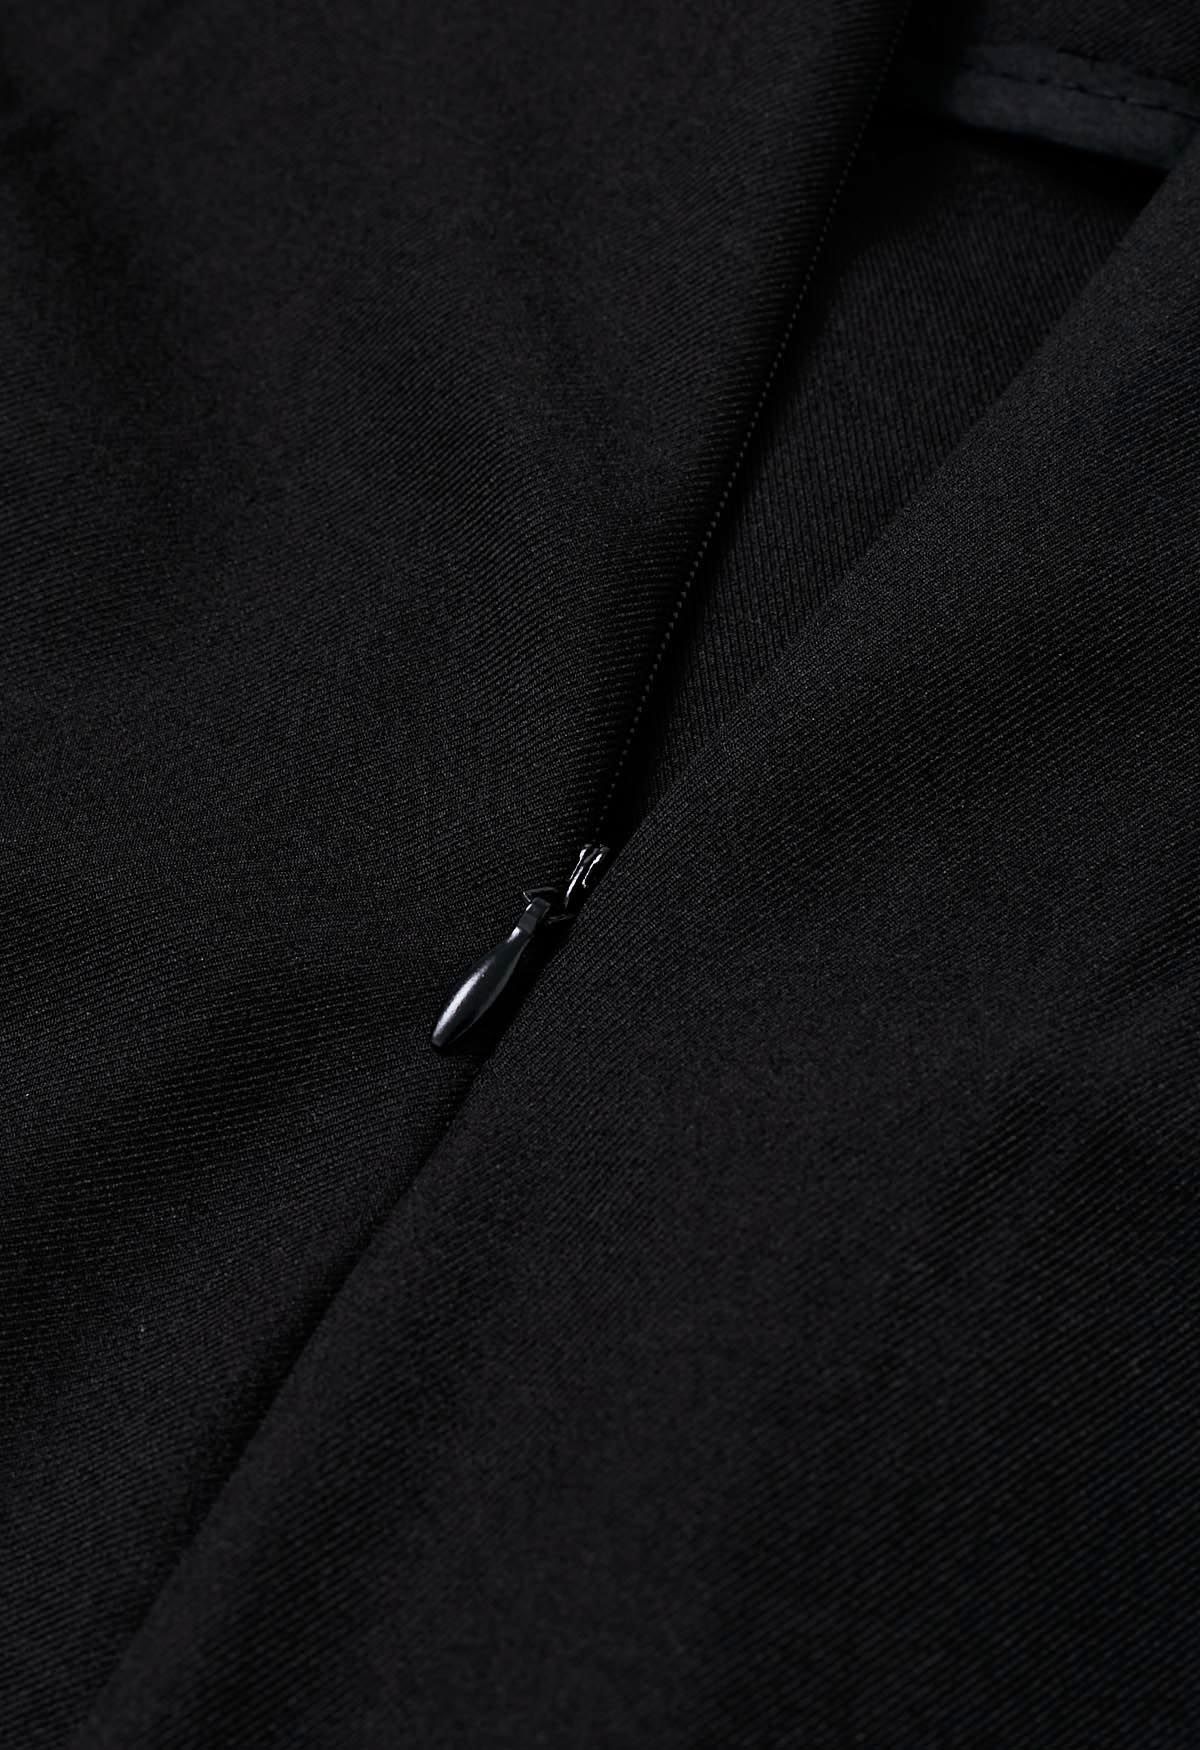 Pantalones anchos plisados con cintura anudada de moda en negro